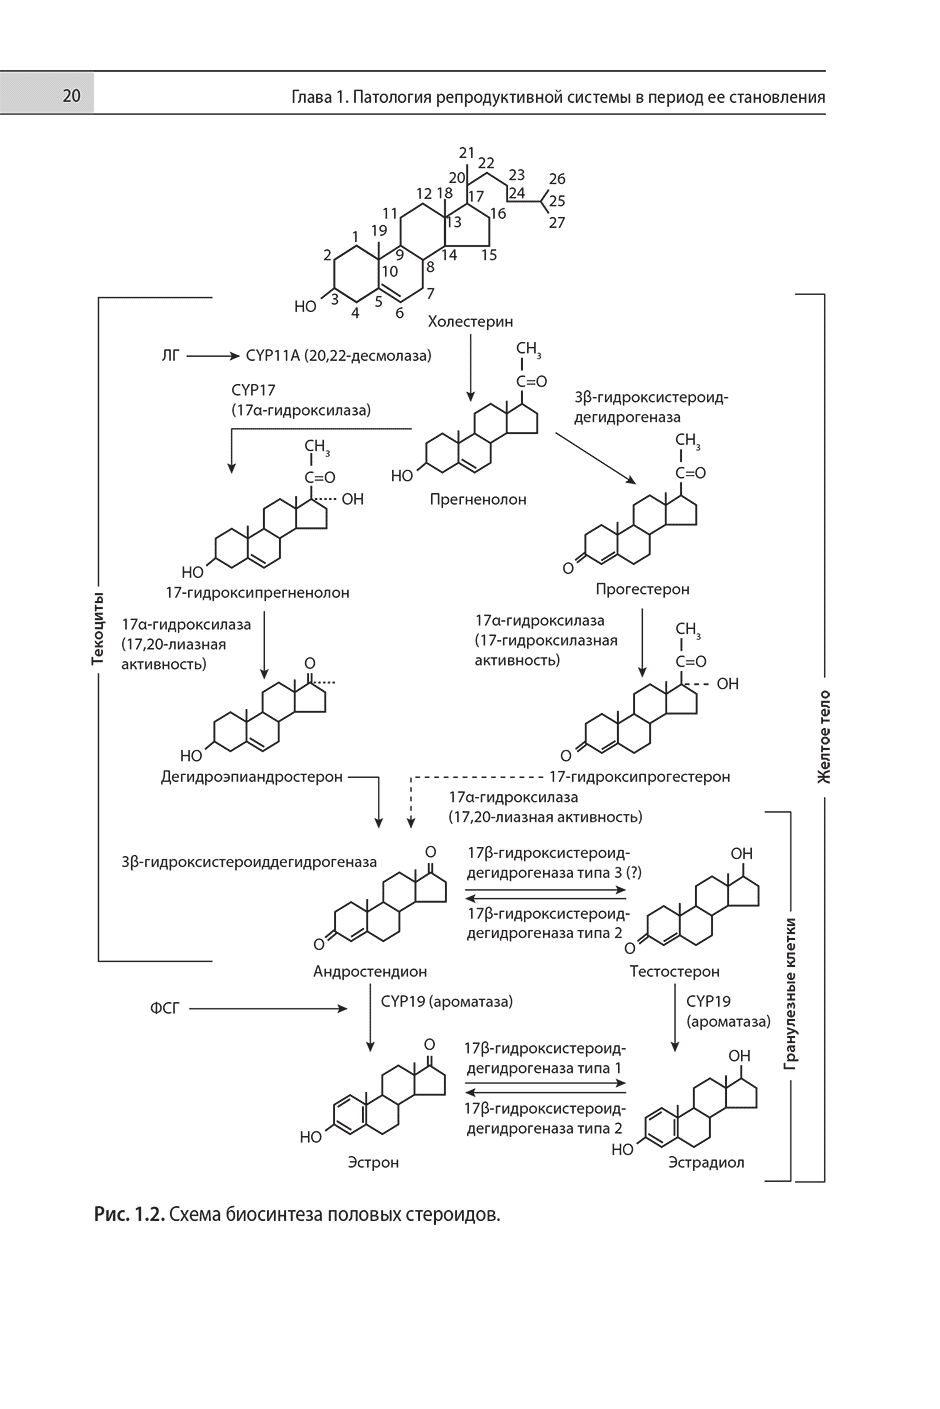 Рис. 1.2. Схема биосинтеза половых стероидов.